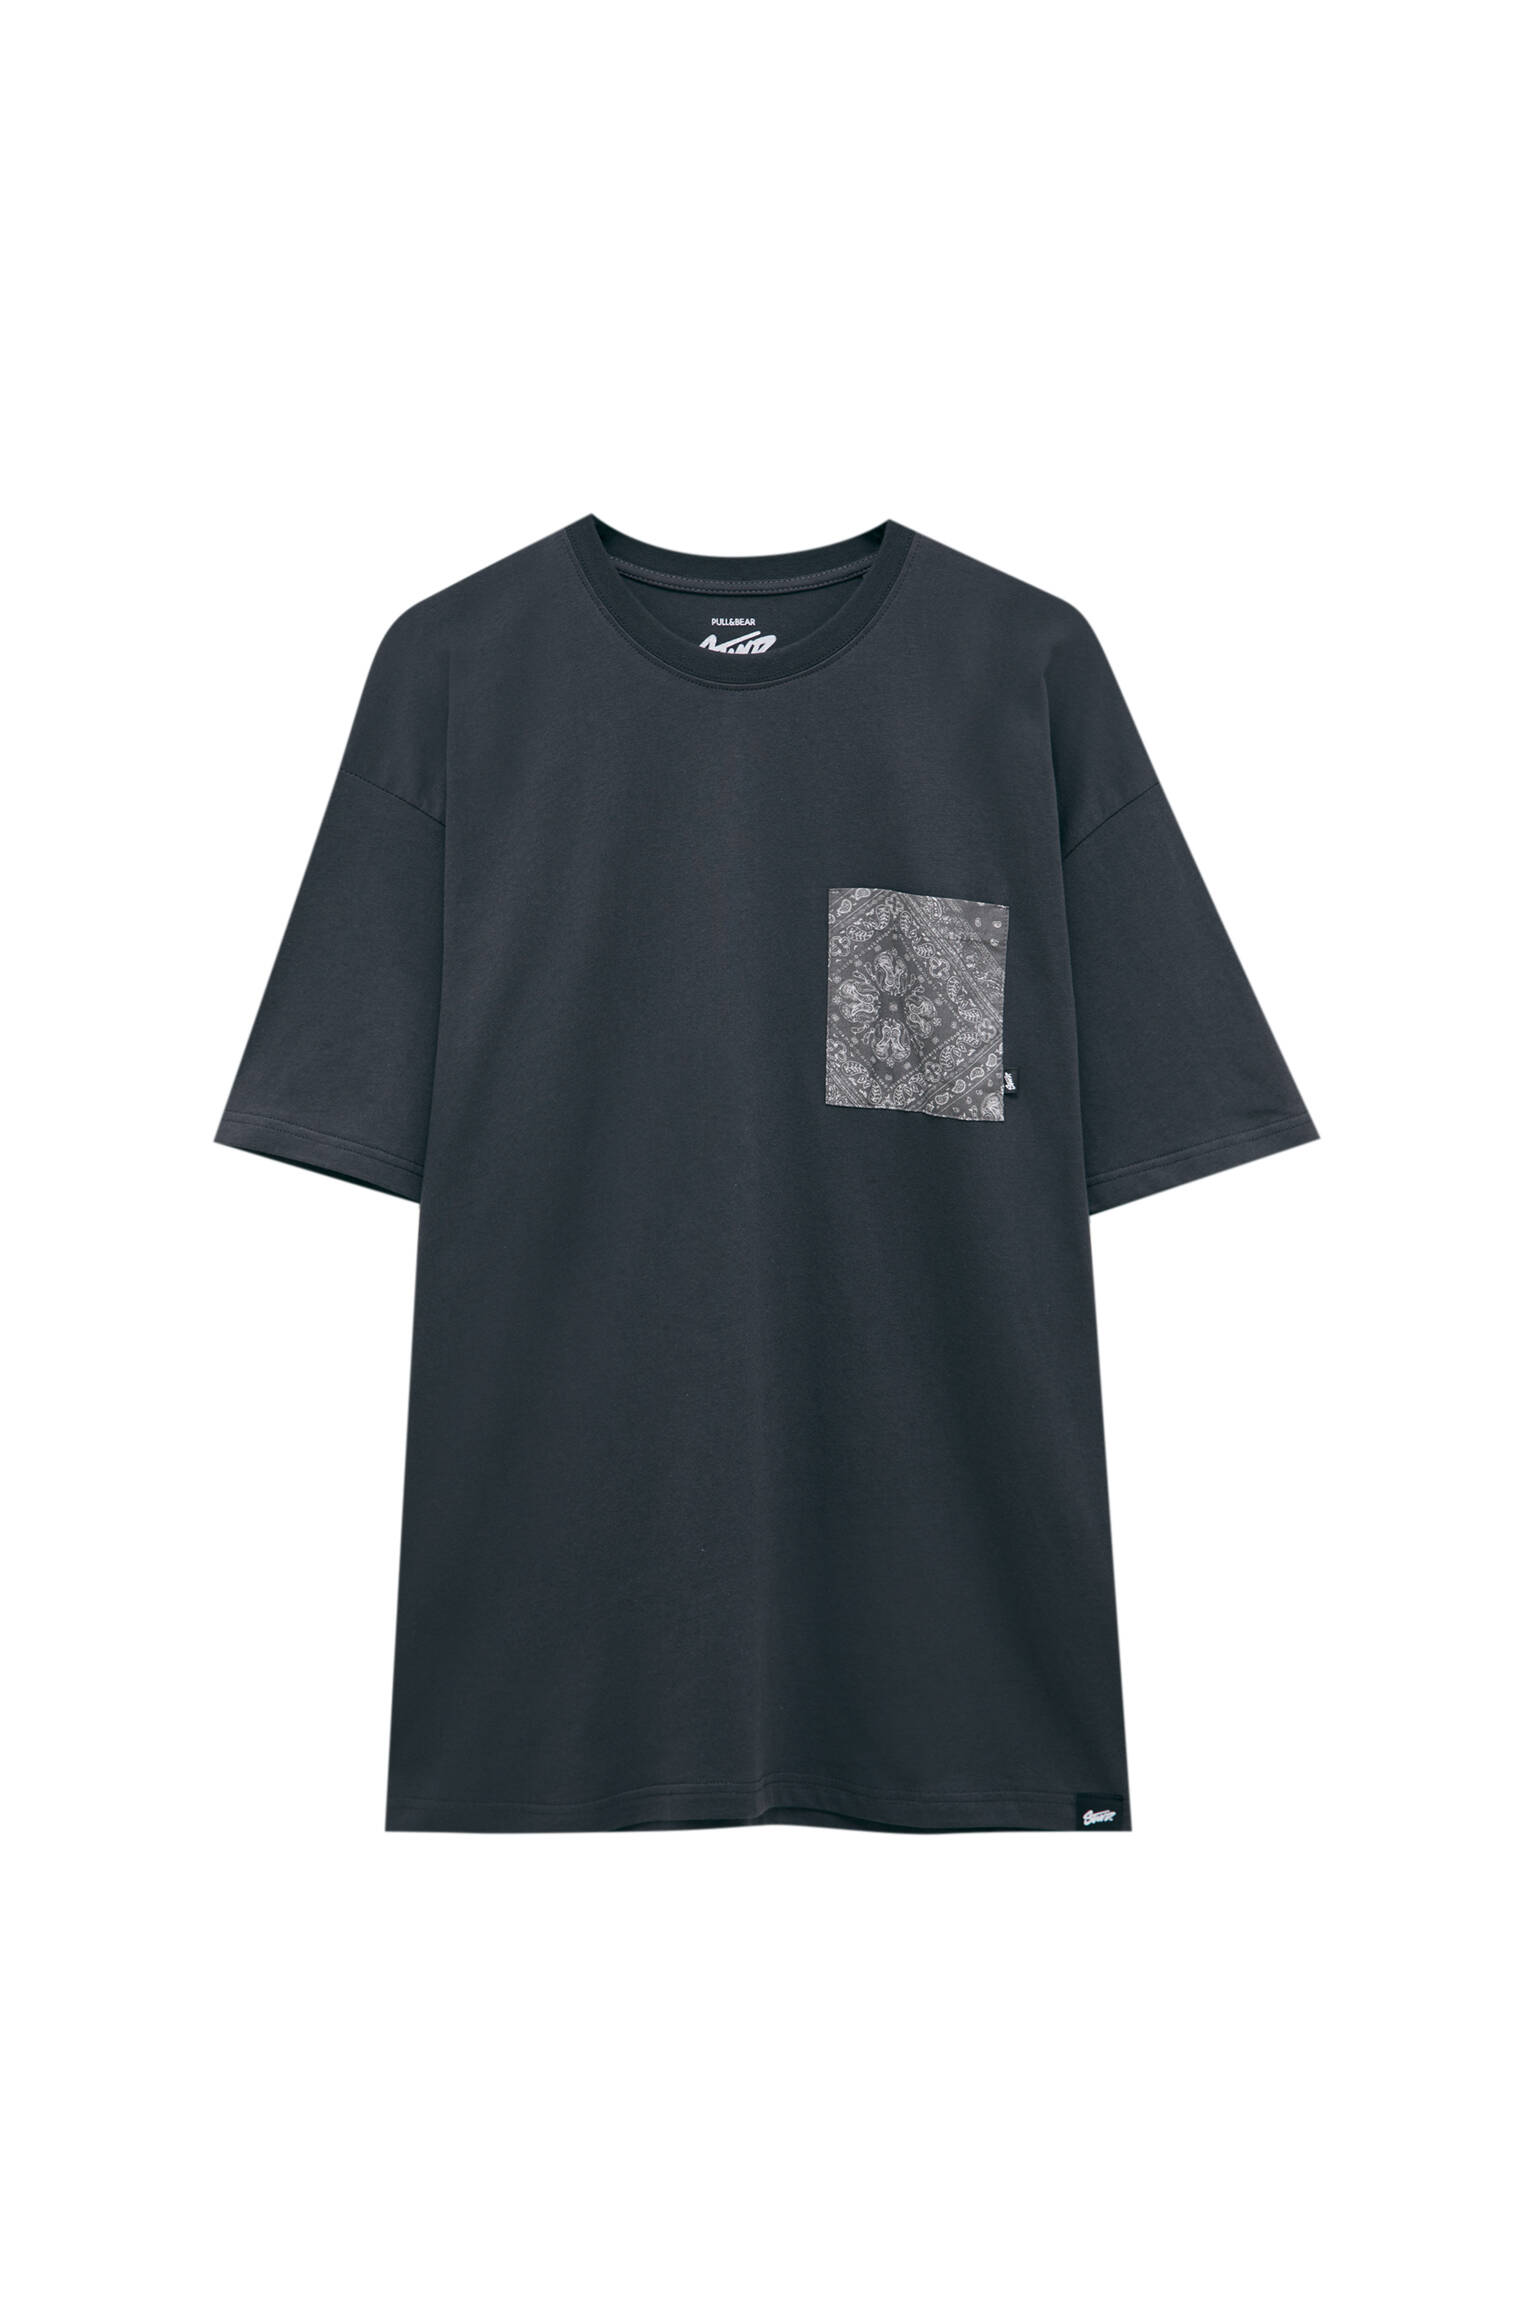 Pull&bear Homme T-shirt Gris Basique à Col Rond Et Manches Courtes, Avec Poche à Imprimé Cachemire. Gris Anthracite S